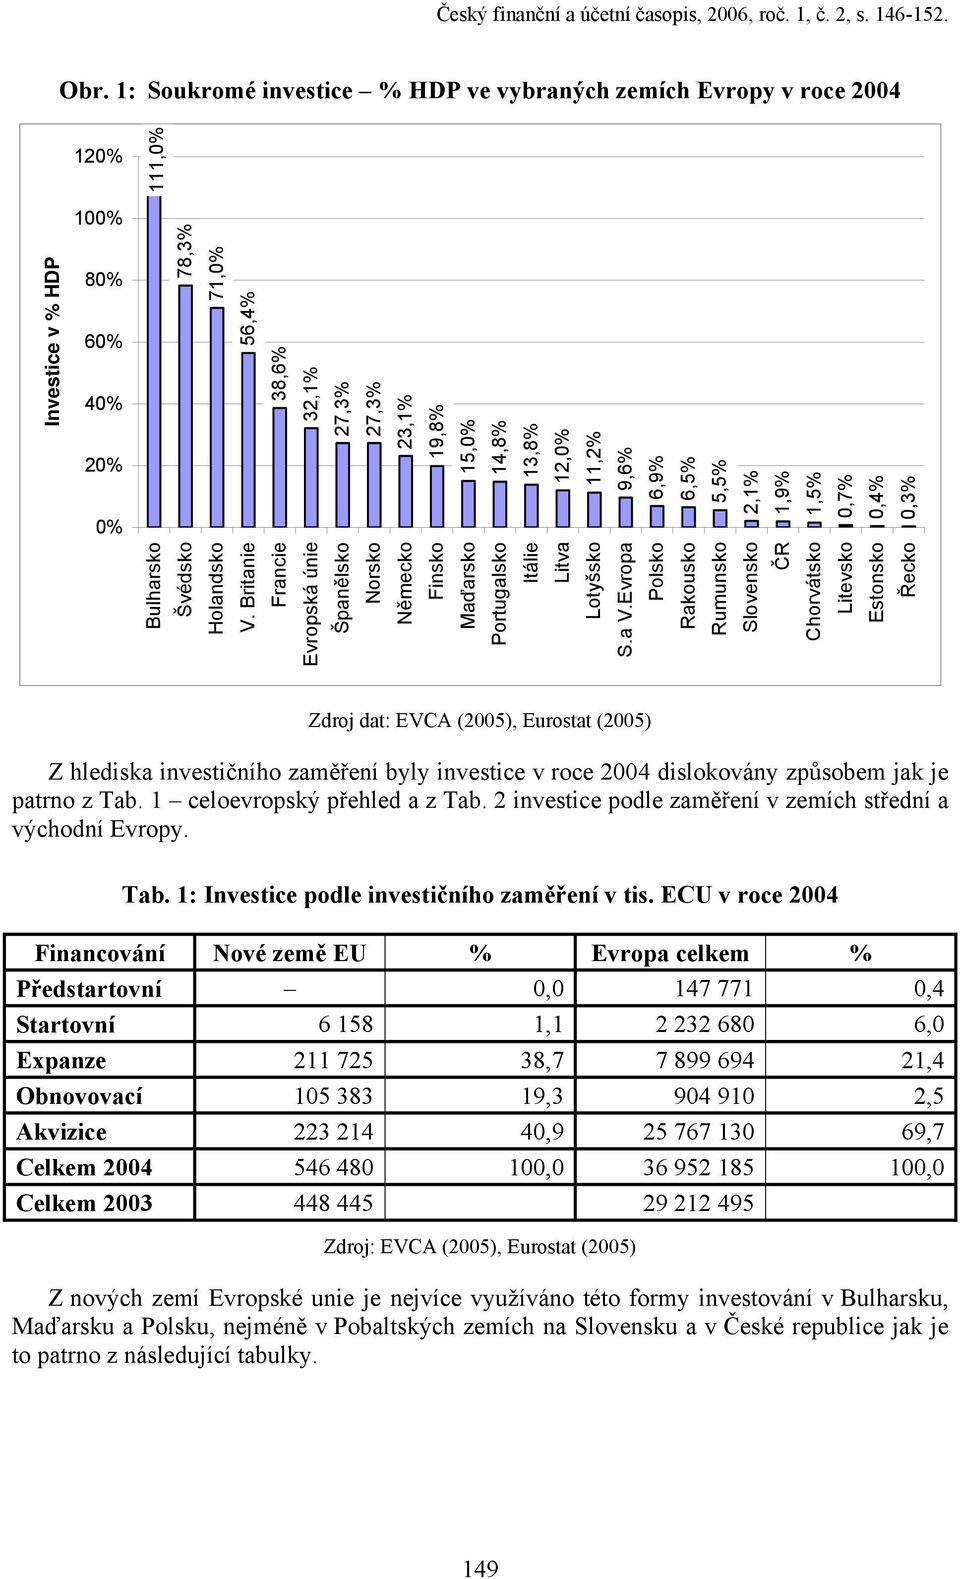 6,5% Bulharsko 5,5% Švédsko 2,1% Holandsko 1,9% V. Britanie 1,5% Francie 0,7% Evropská únie 0,4% Španělsko Investice v % HDP 0,3% Norsko Německo Finsko Maďarsko Portugalsko Itálie Litva Lotyšsko S.